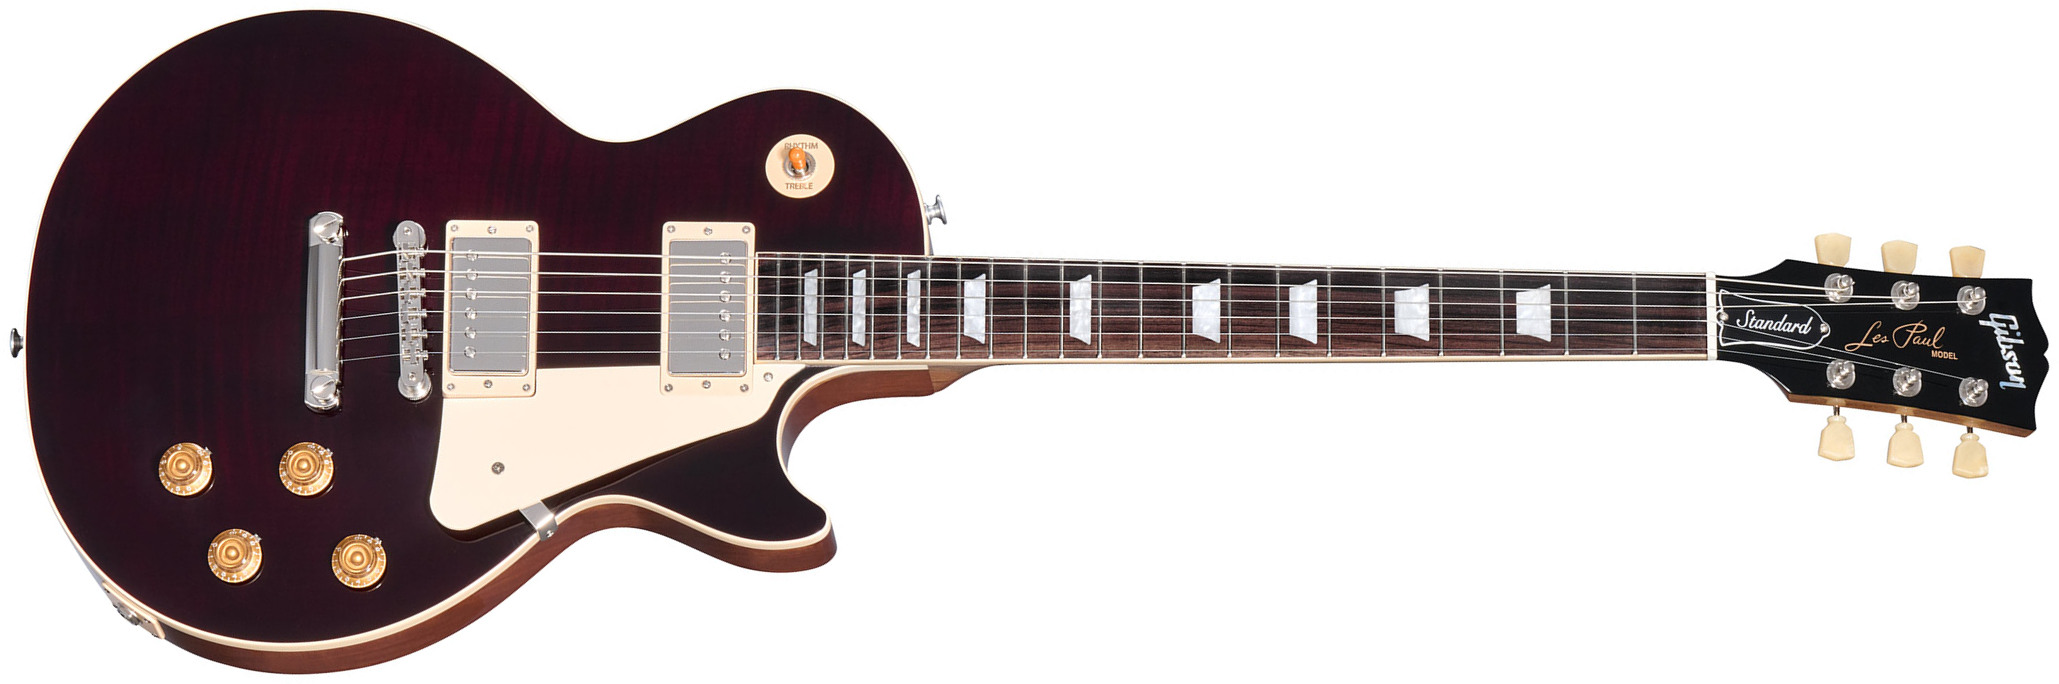 Gibson Les Paul Standard 50s Figured Custom Color 2h Ht Rw - Translucent Oxblood - Guitarra eléctrica de corte único. - Main picture